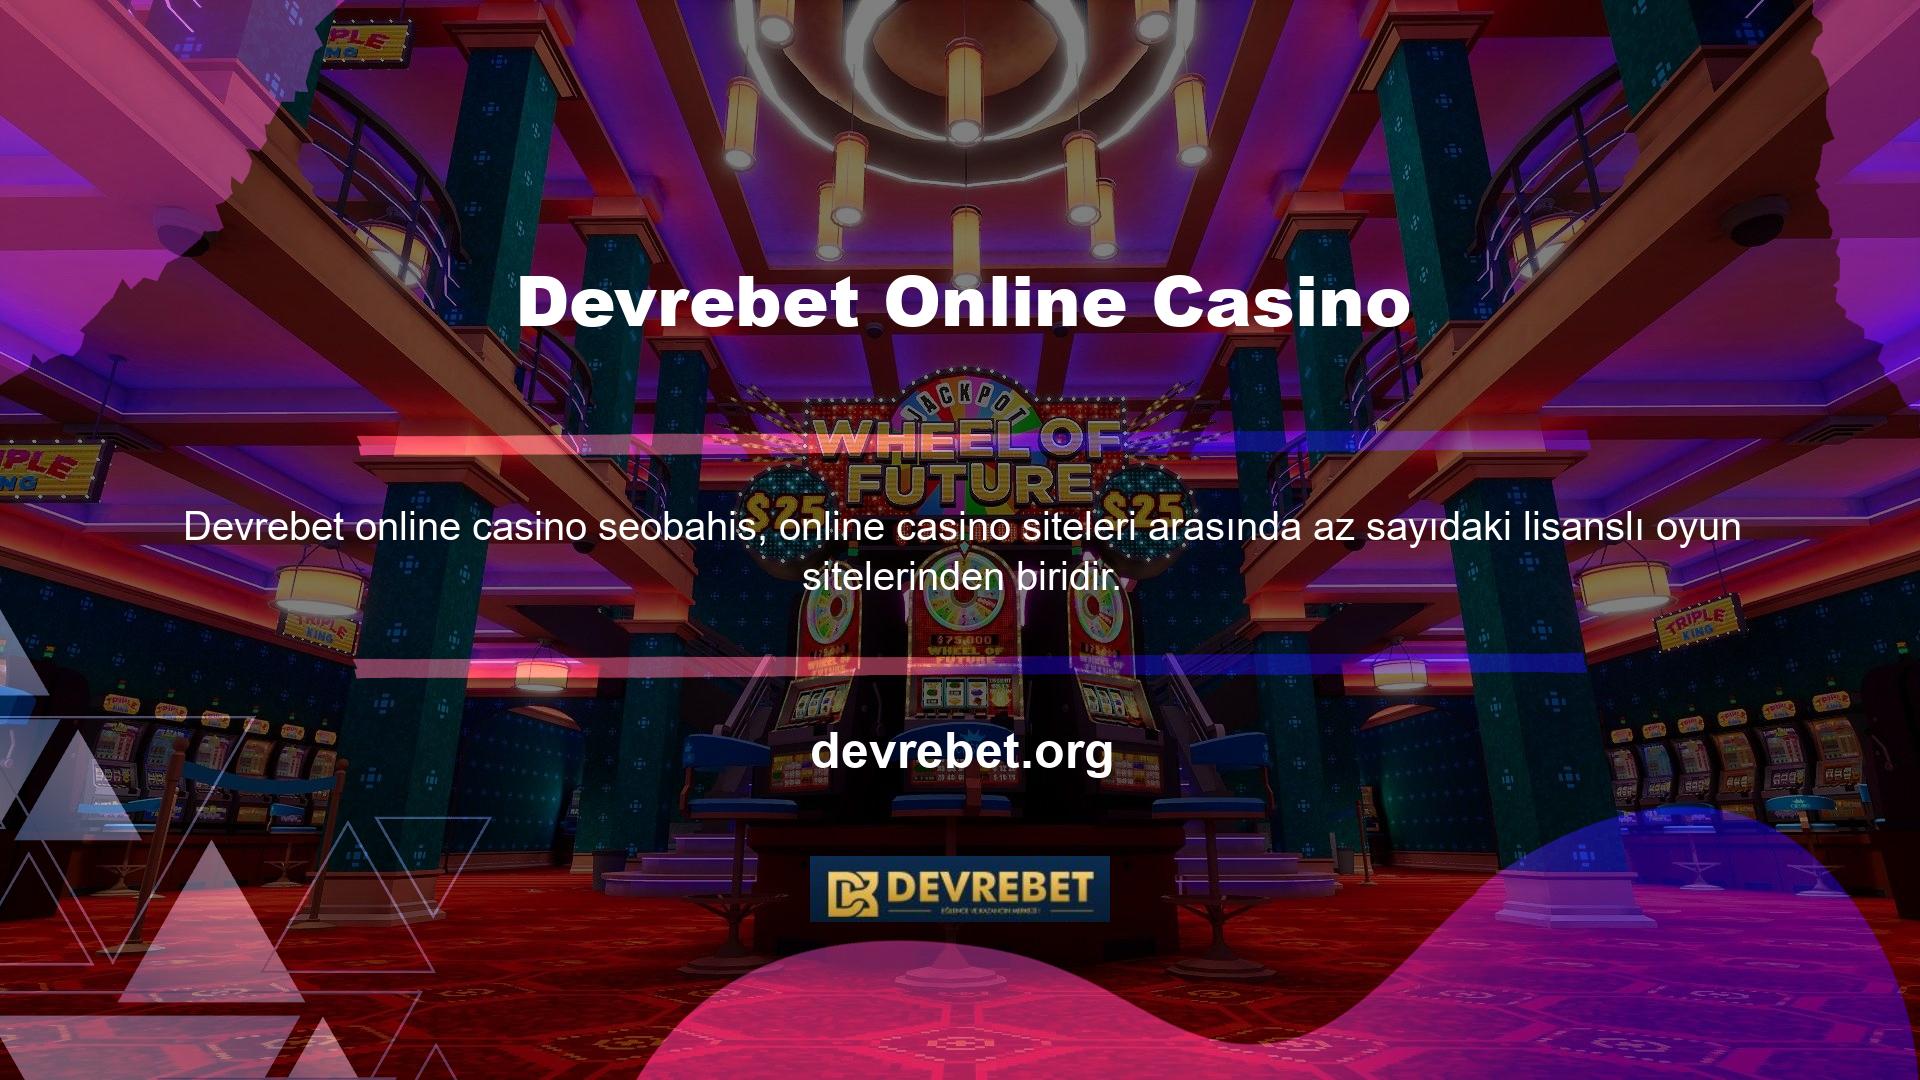 Devrebet lisans bilgisi bahisleri casino tutkunları arasında oldukça popülerdir